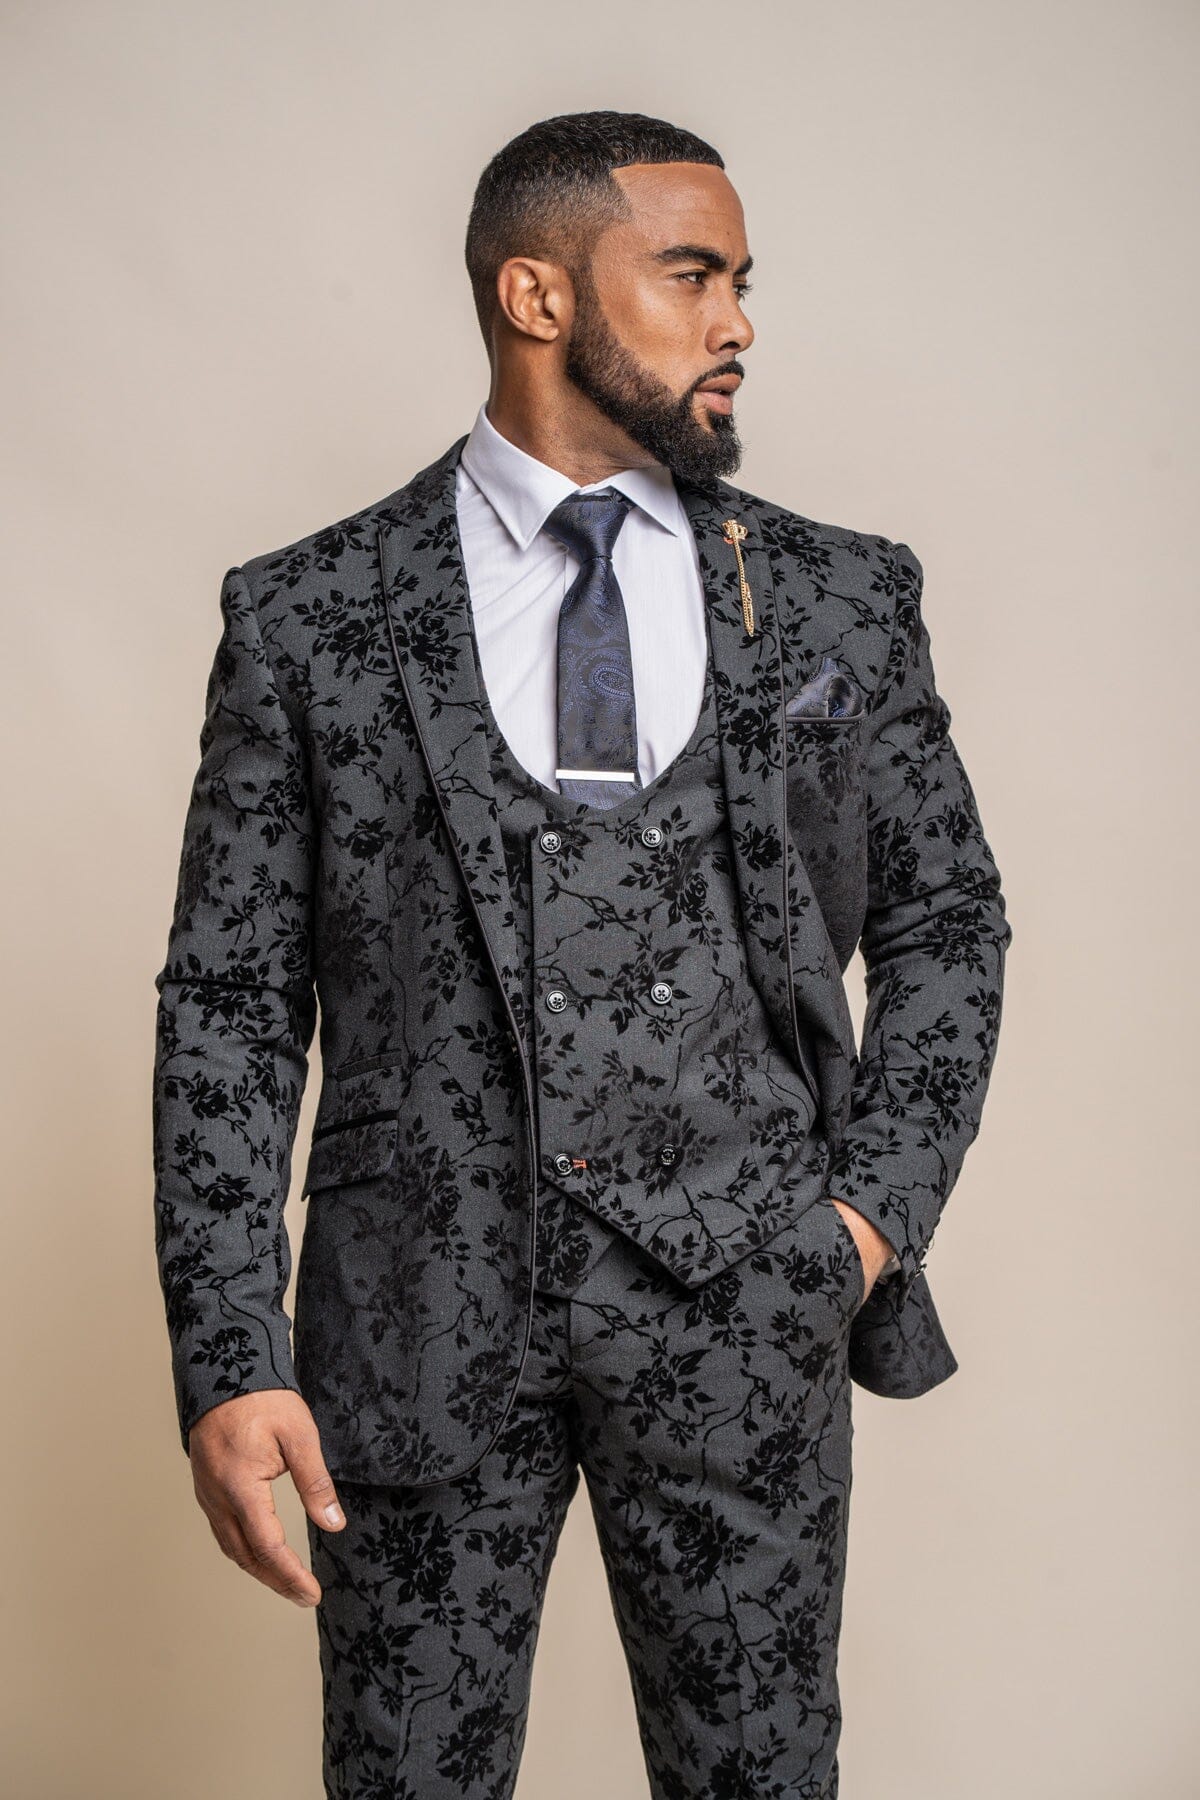 XUELC Men Suit Vests and Pants Tie Black Formal Dress Vest & Pant Slim Fit  Prom Suits Waistcoat XS at Amazon Men's Clothing store